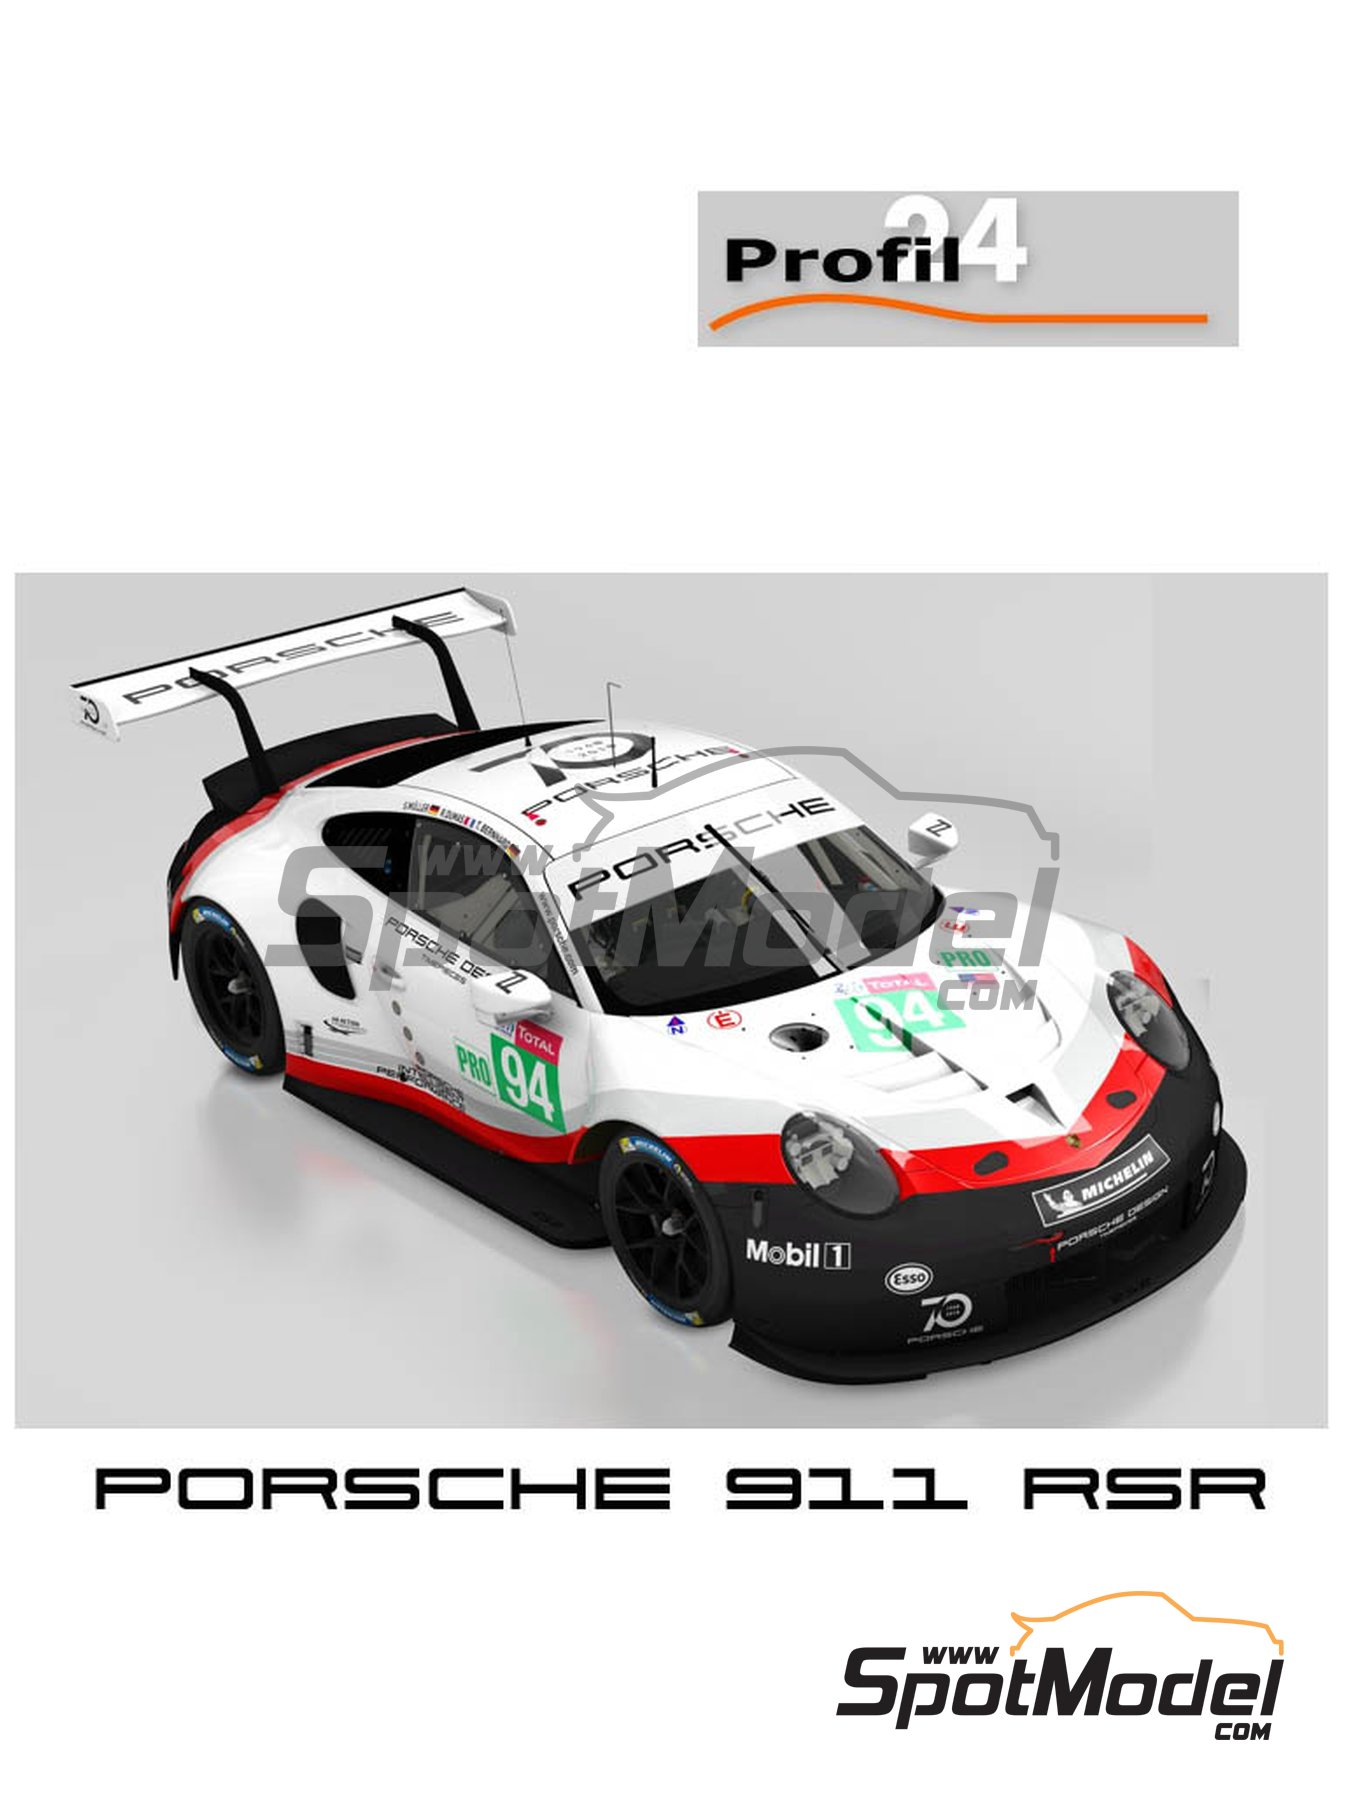 Porsche Michelin - Porsche Deutschland